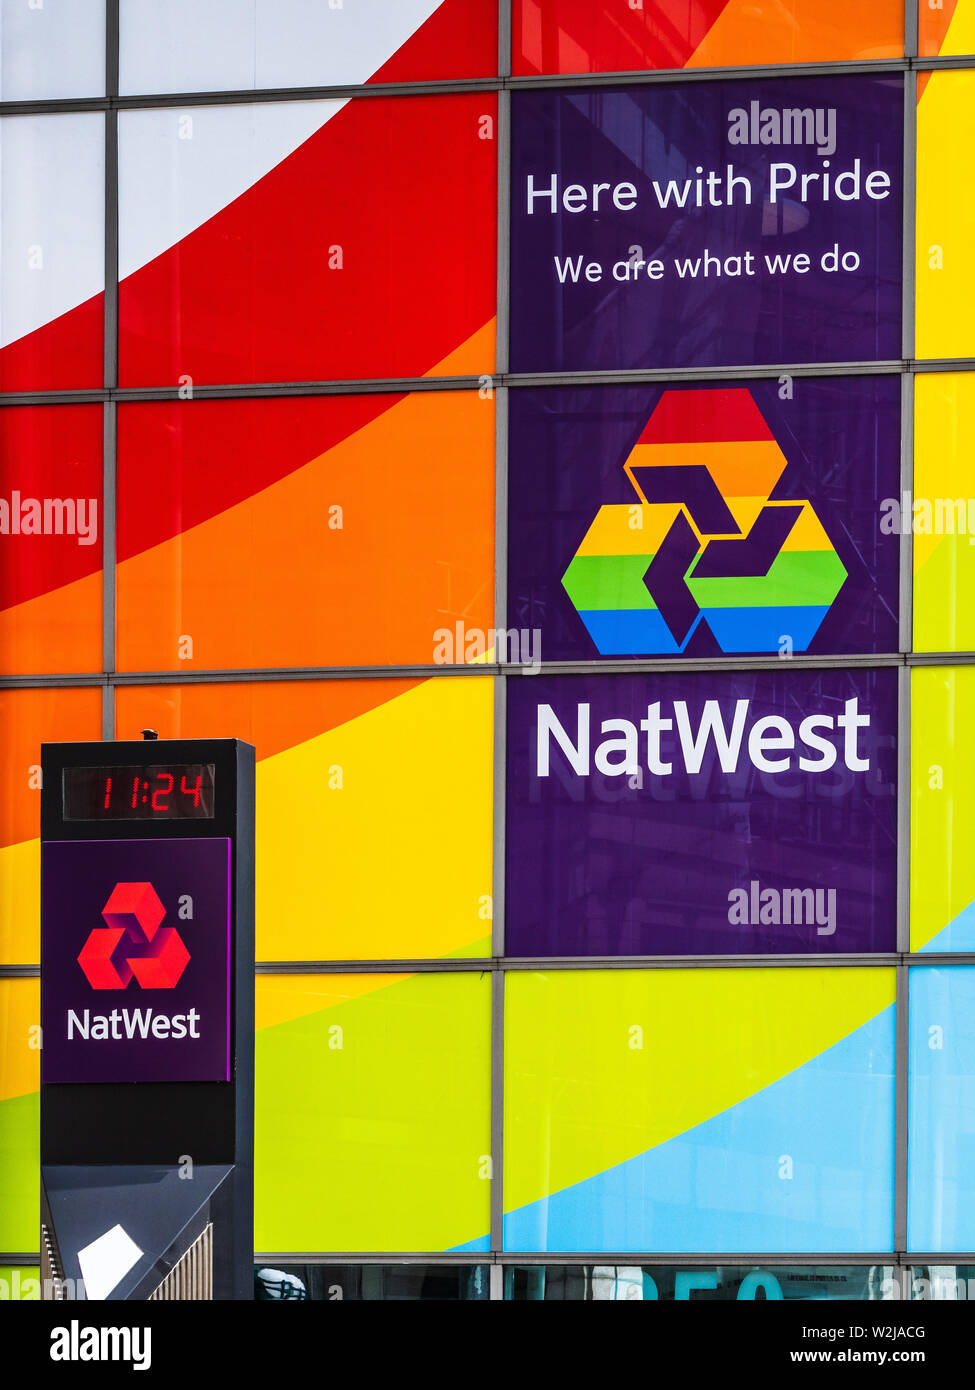 Le Mois de la fierté LGBT des commandites - Les bureaux de Londres de Natwest décoré de symboles pour arc-en-ciel le mois de la fierté LGBT + Banque D'Images